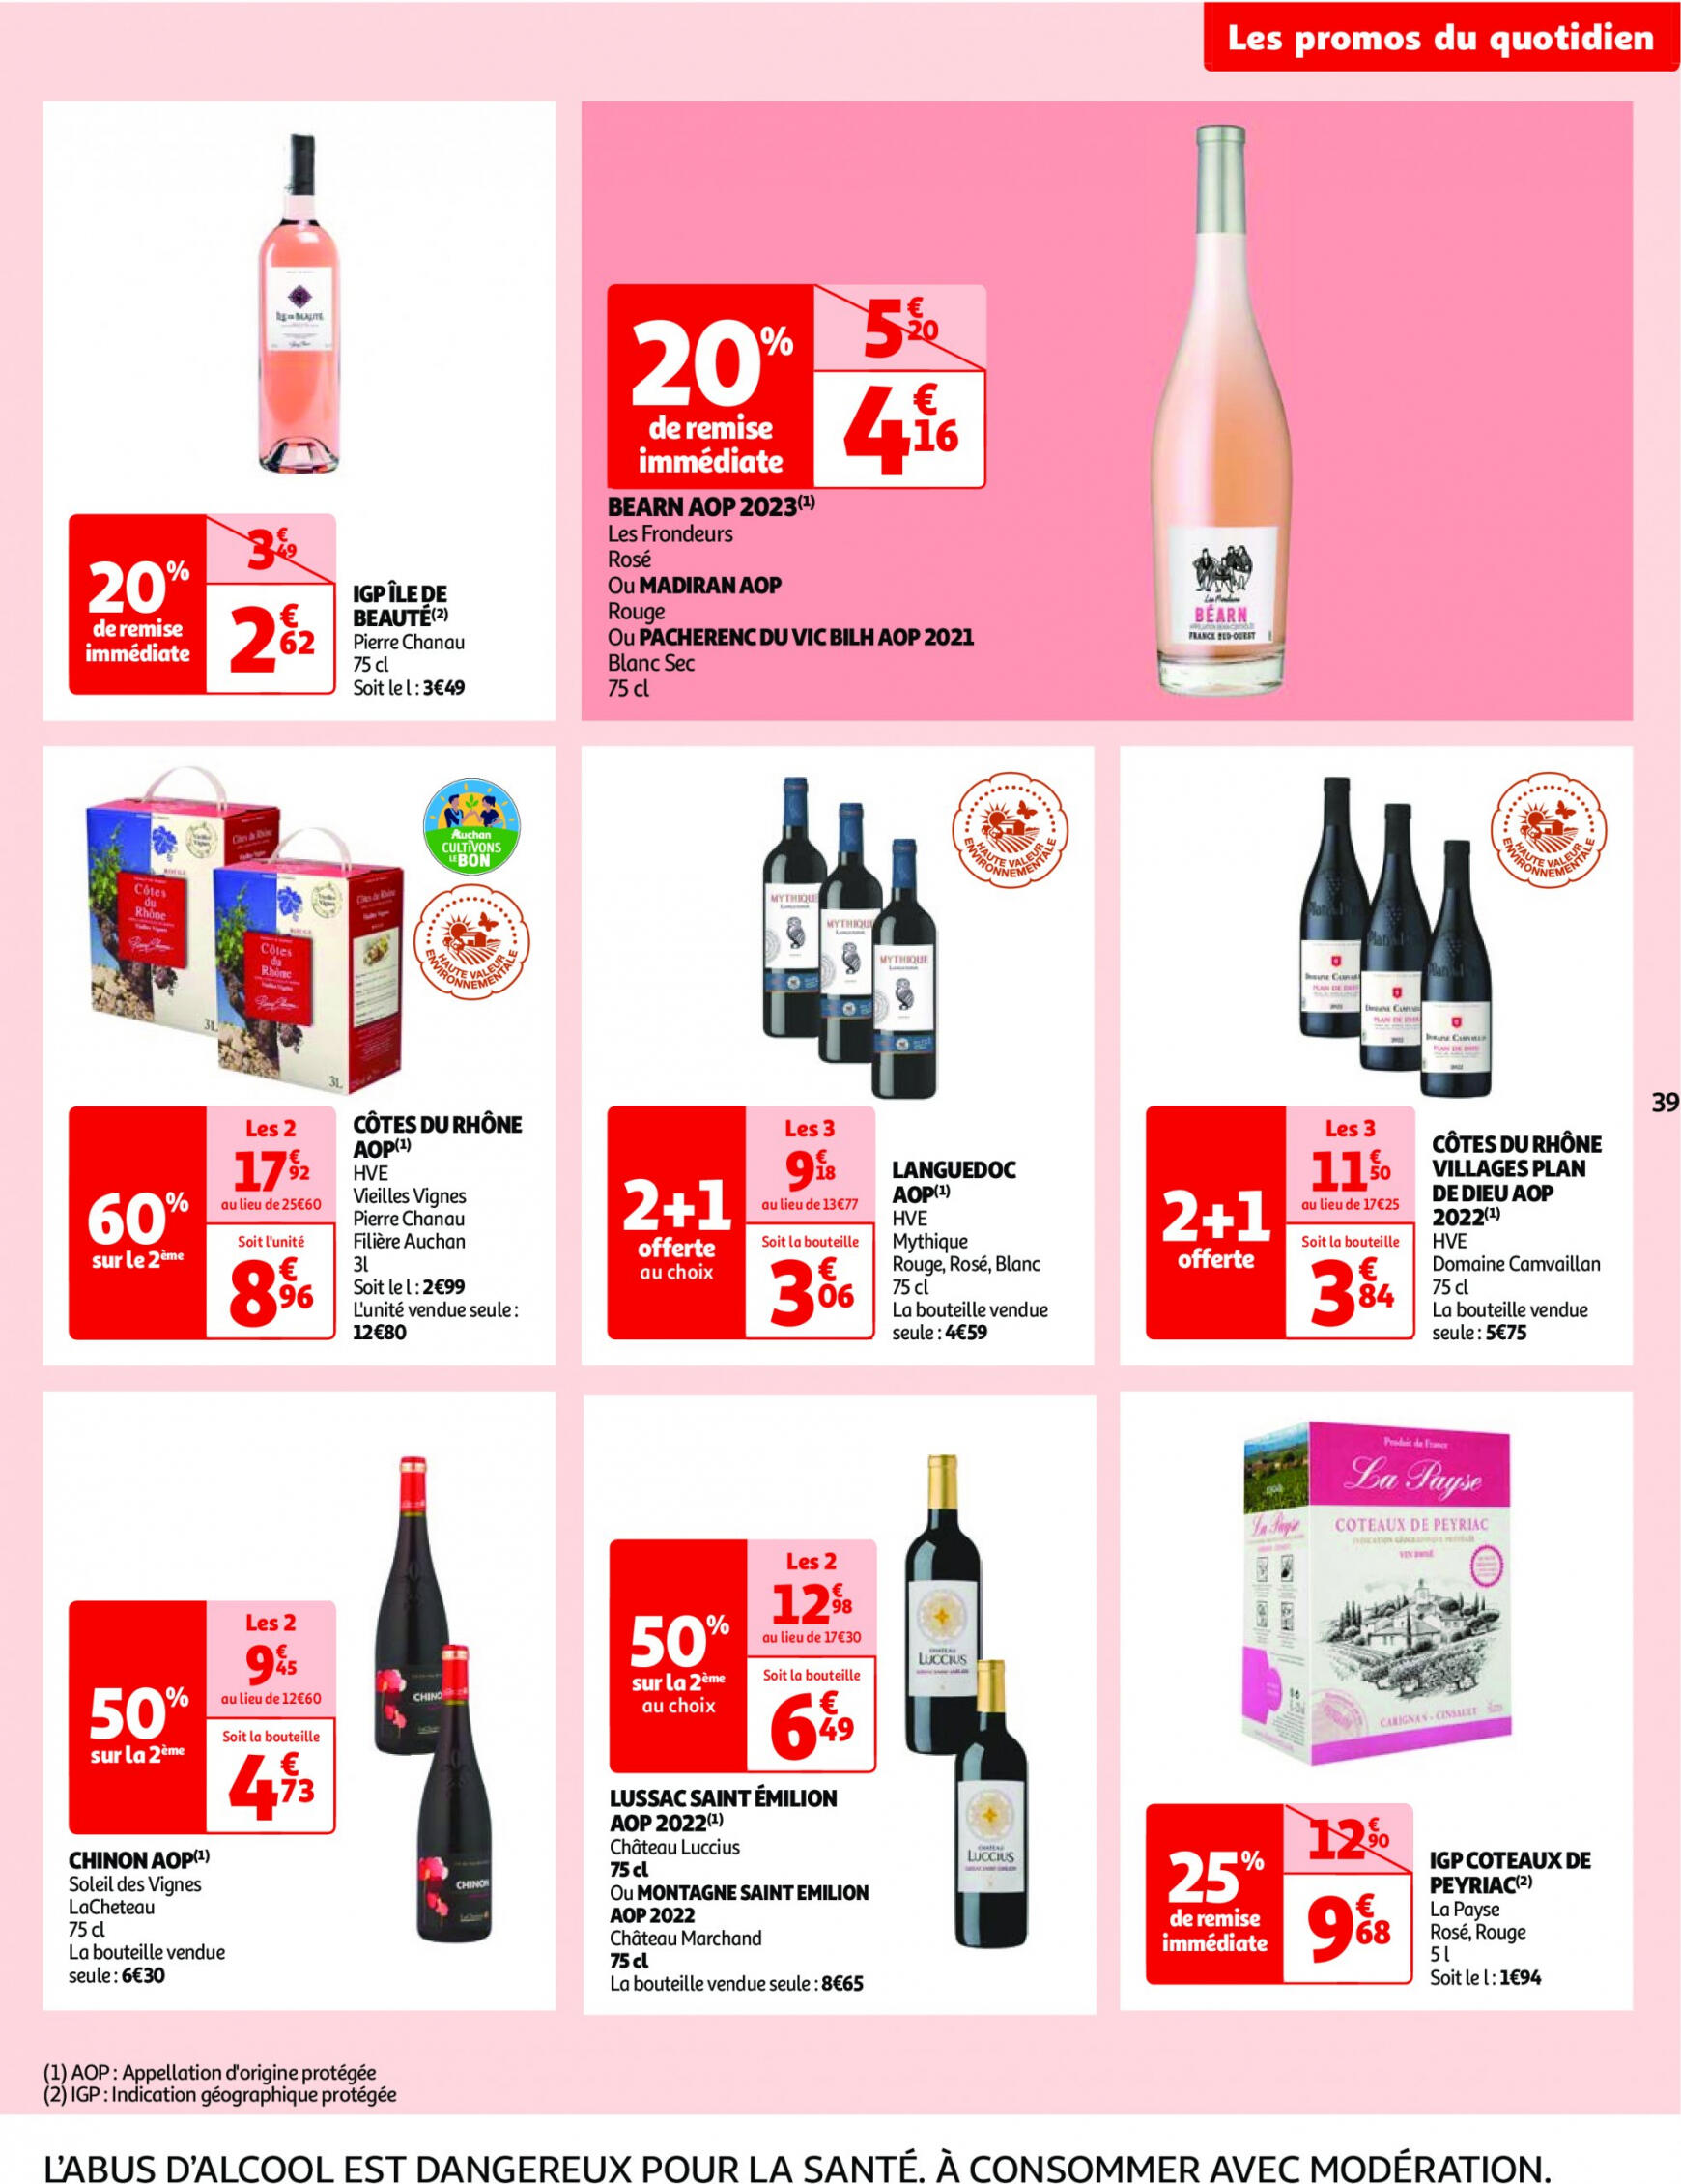 auchan - Prospectus Auchan actuel 14.05. - 21.05. - page: 39